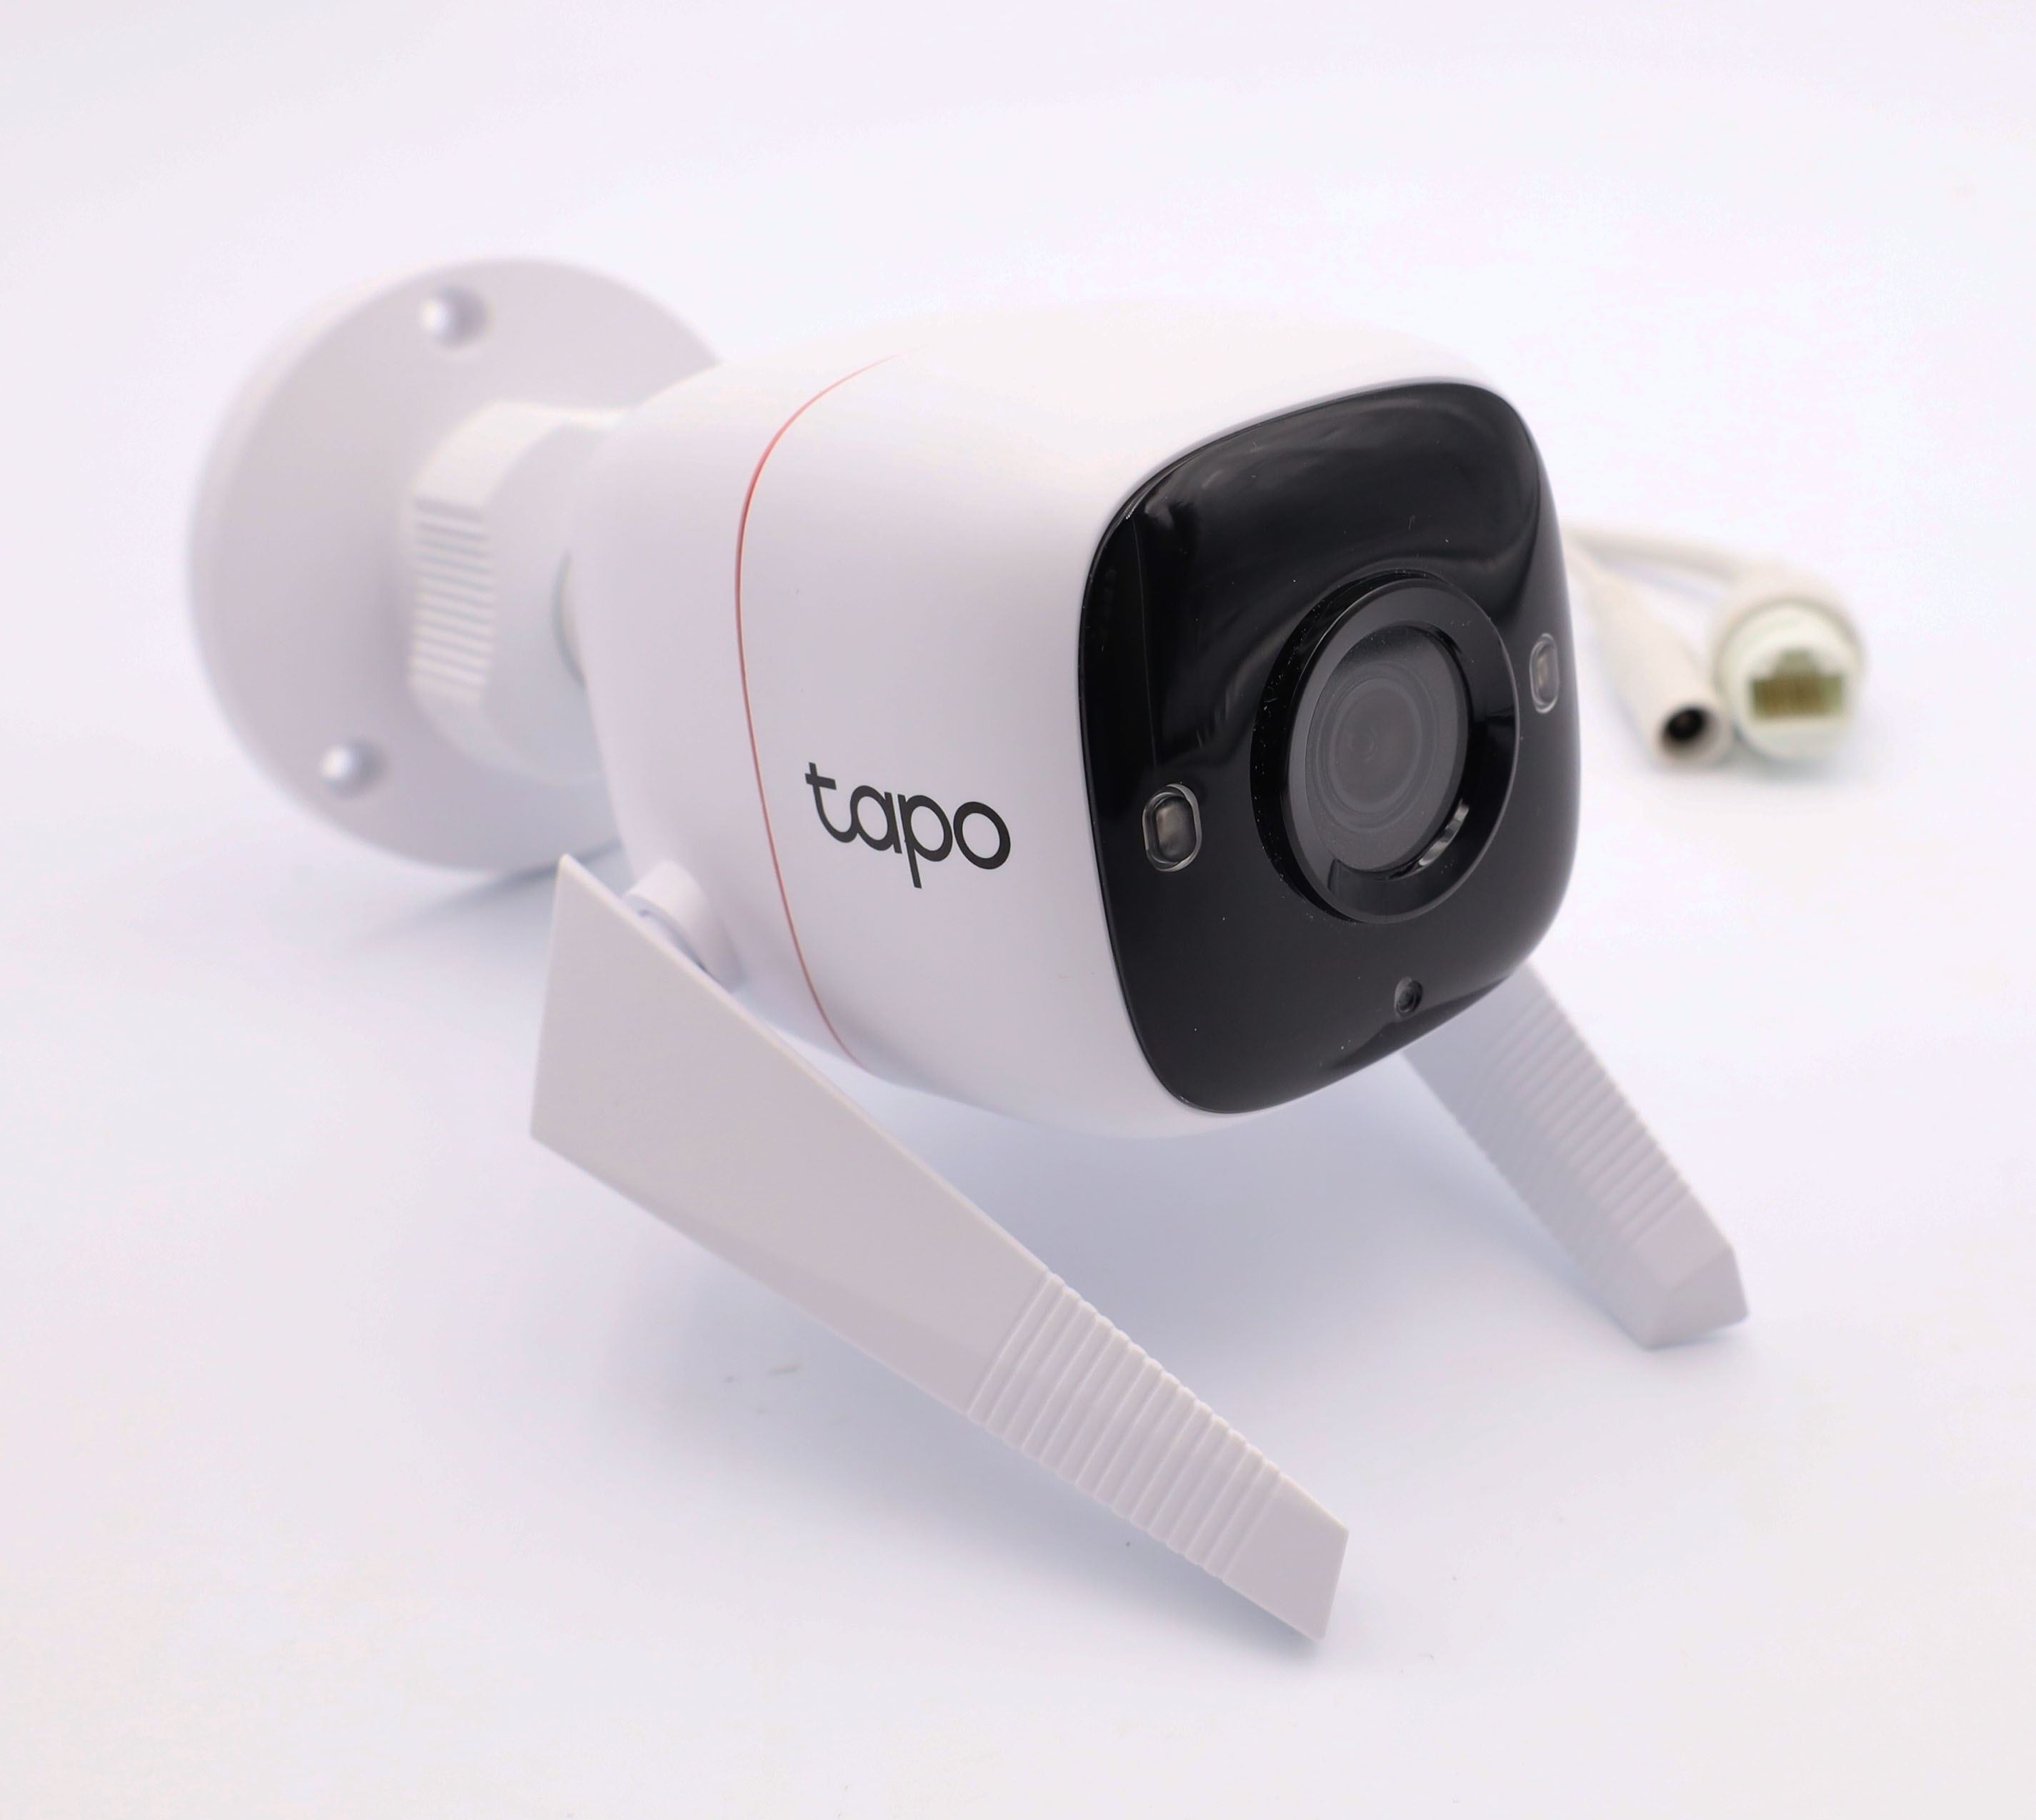 Tapo C400S2 - Tapo C400S2 V1 - 2 x Tapo C400 Cameras + Tapo H200